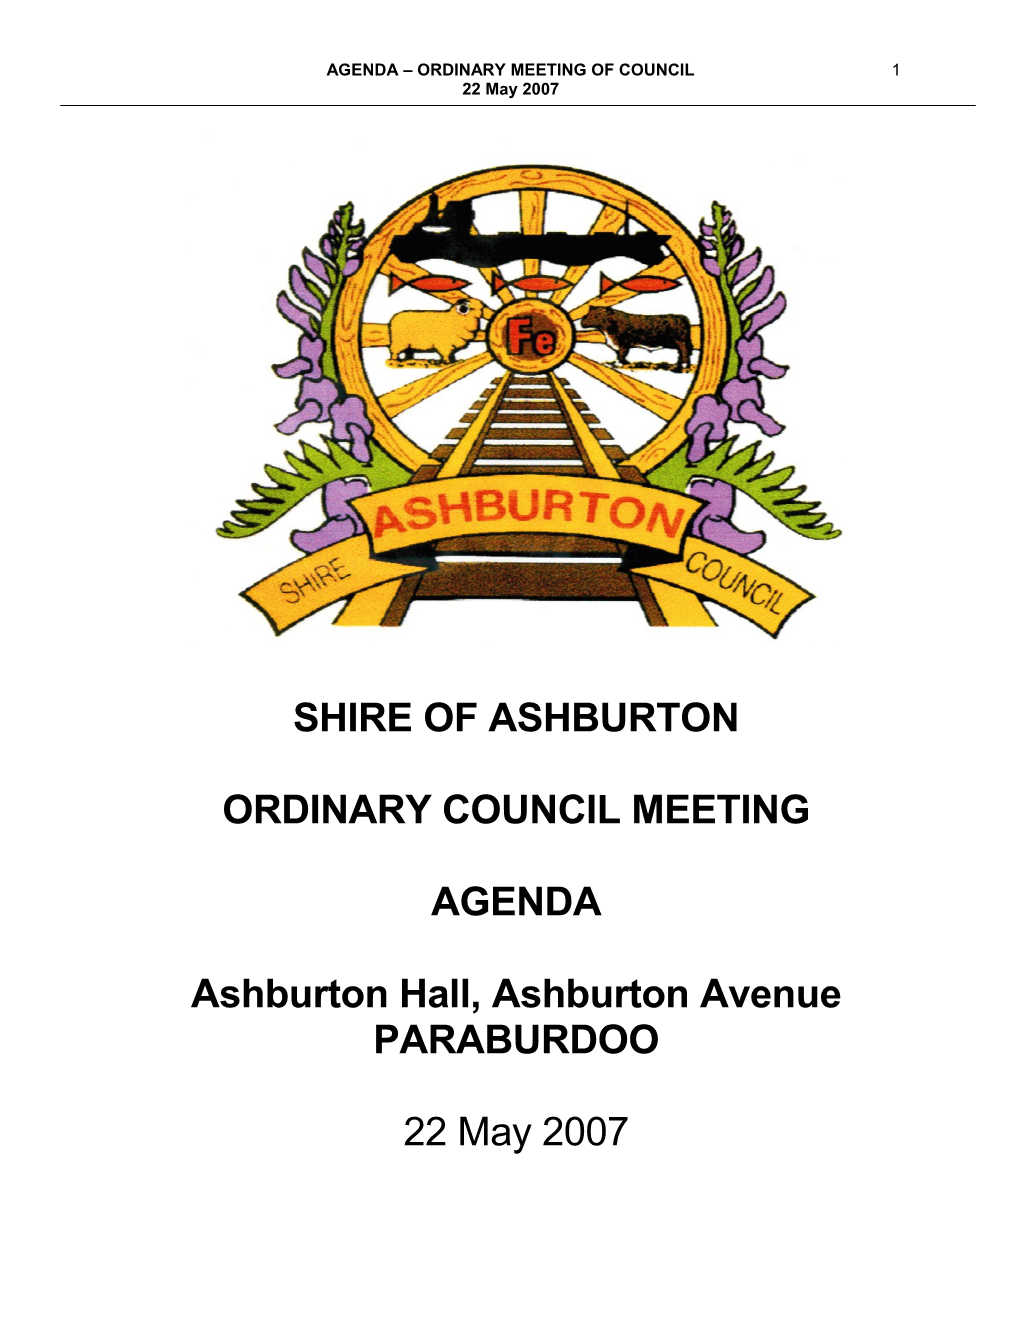 Shire of Ashburton